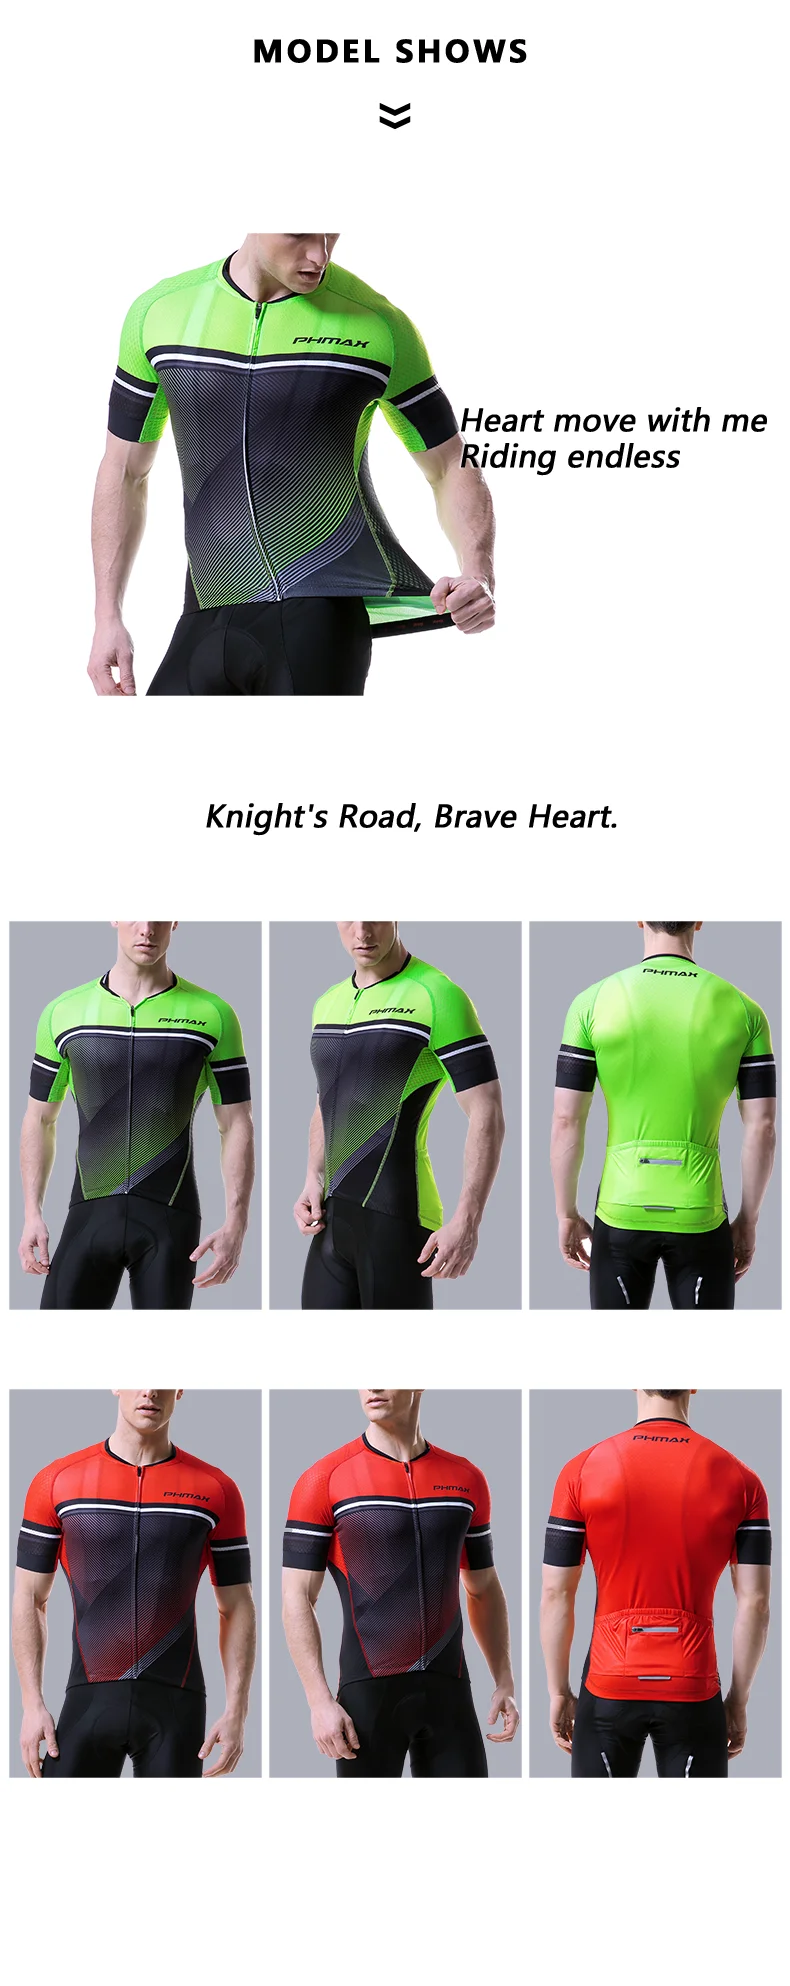 PHMAX Джерси для велоспорта, одежда для горного велосипеда, одежда для гоночного велосипеда, одежда для велоспорта, одежда для велоспорта